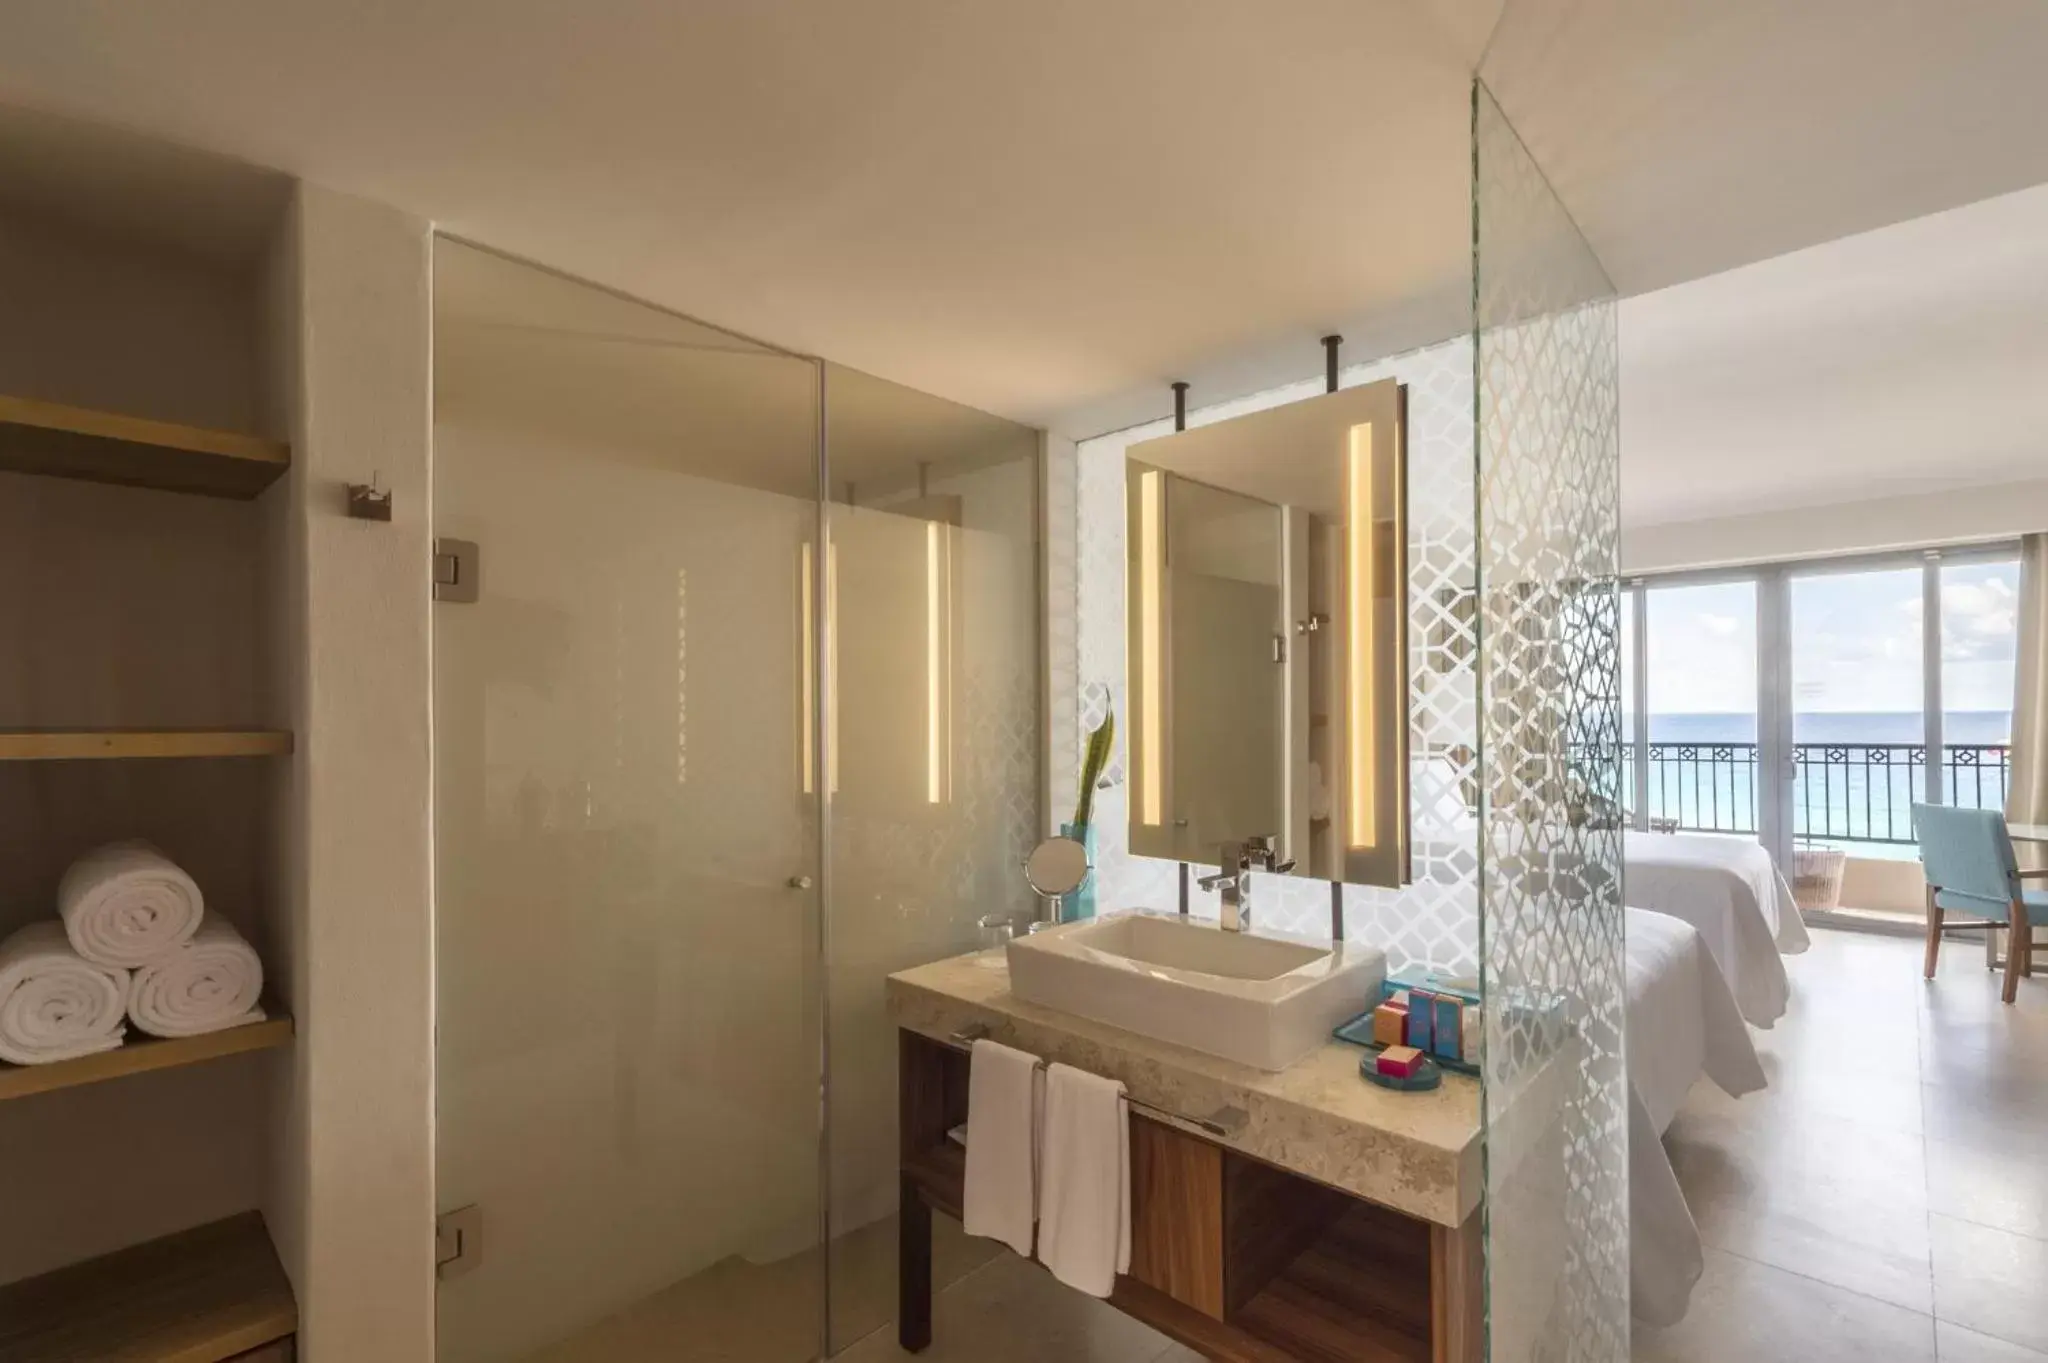 Photo of the whole room, Bathroom in Fiesta Americana Condesa Cancun - All Inclusive